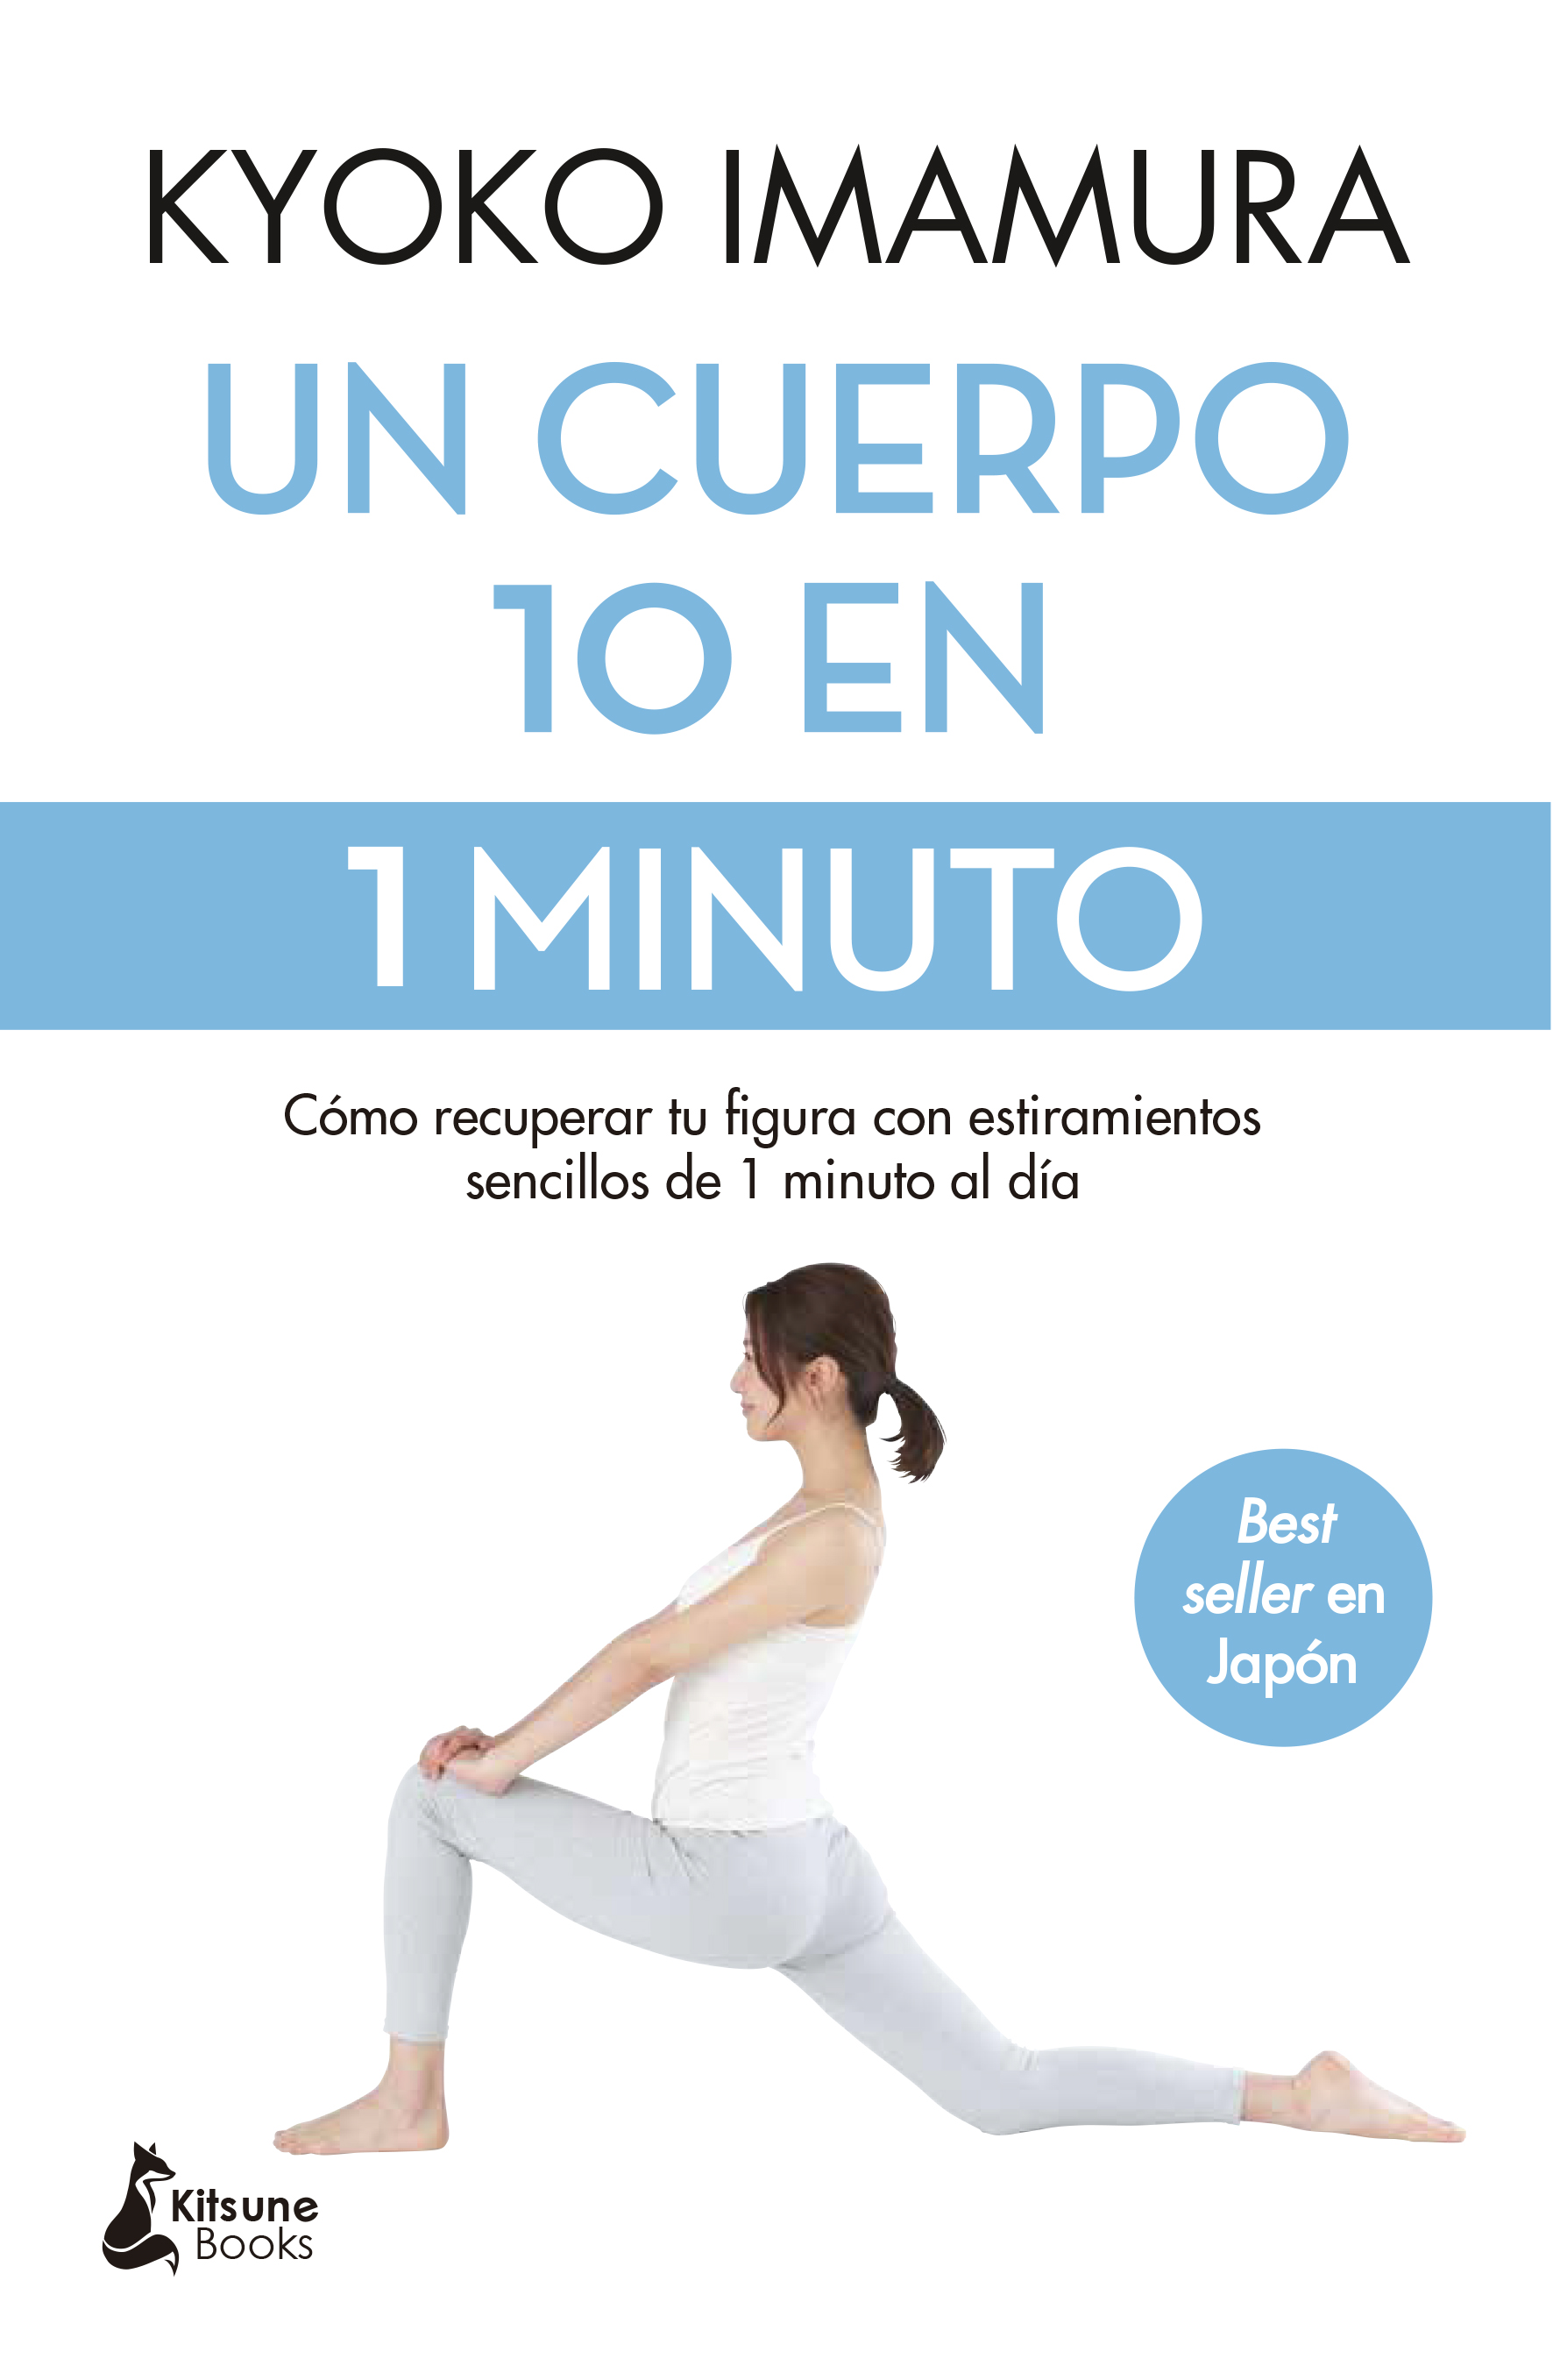 Un cuerpo 10 en 1 minuto   «Cómo recuperar tu figura con estiramientos sencillos de 1 minuto al día»